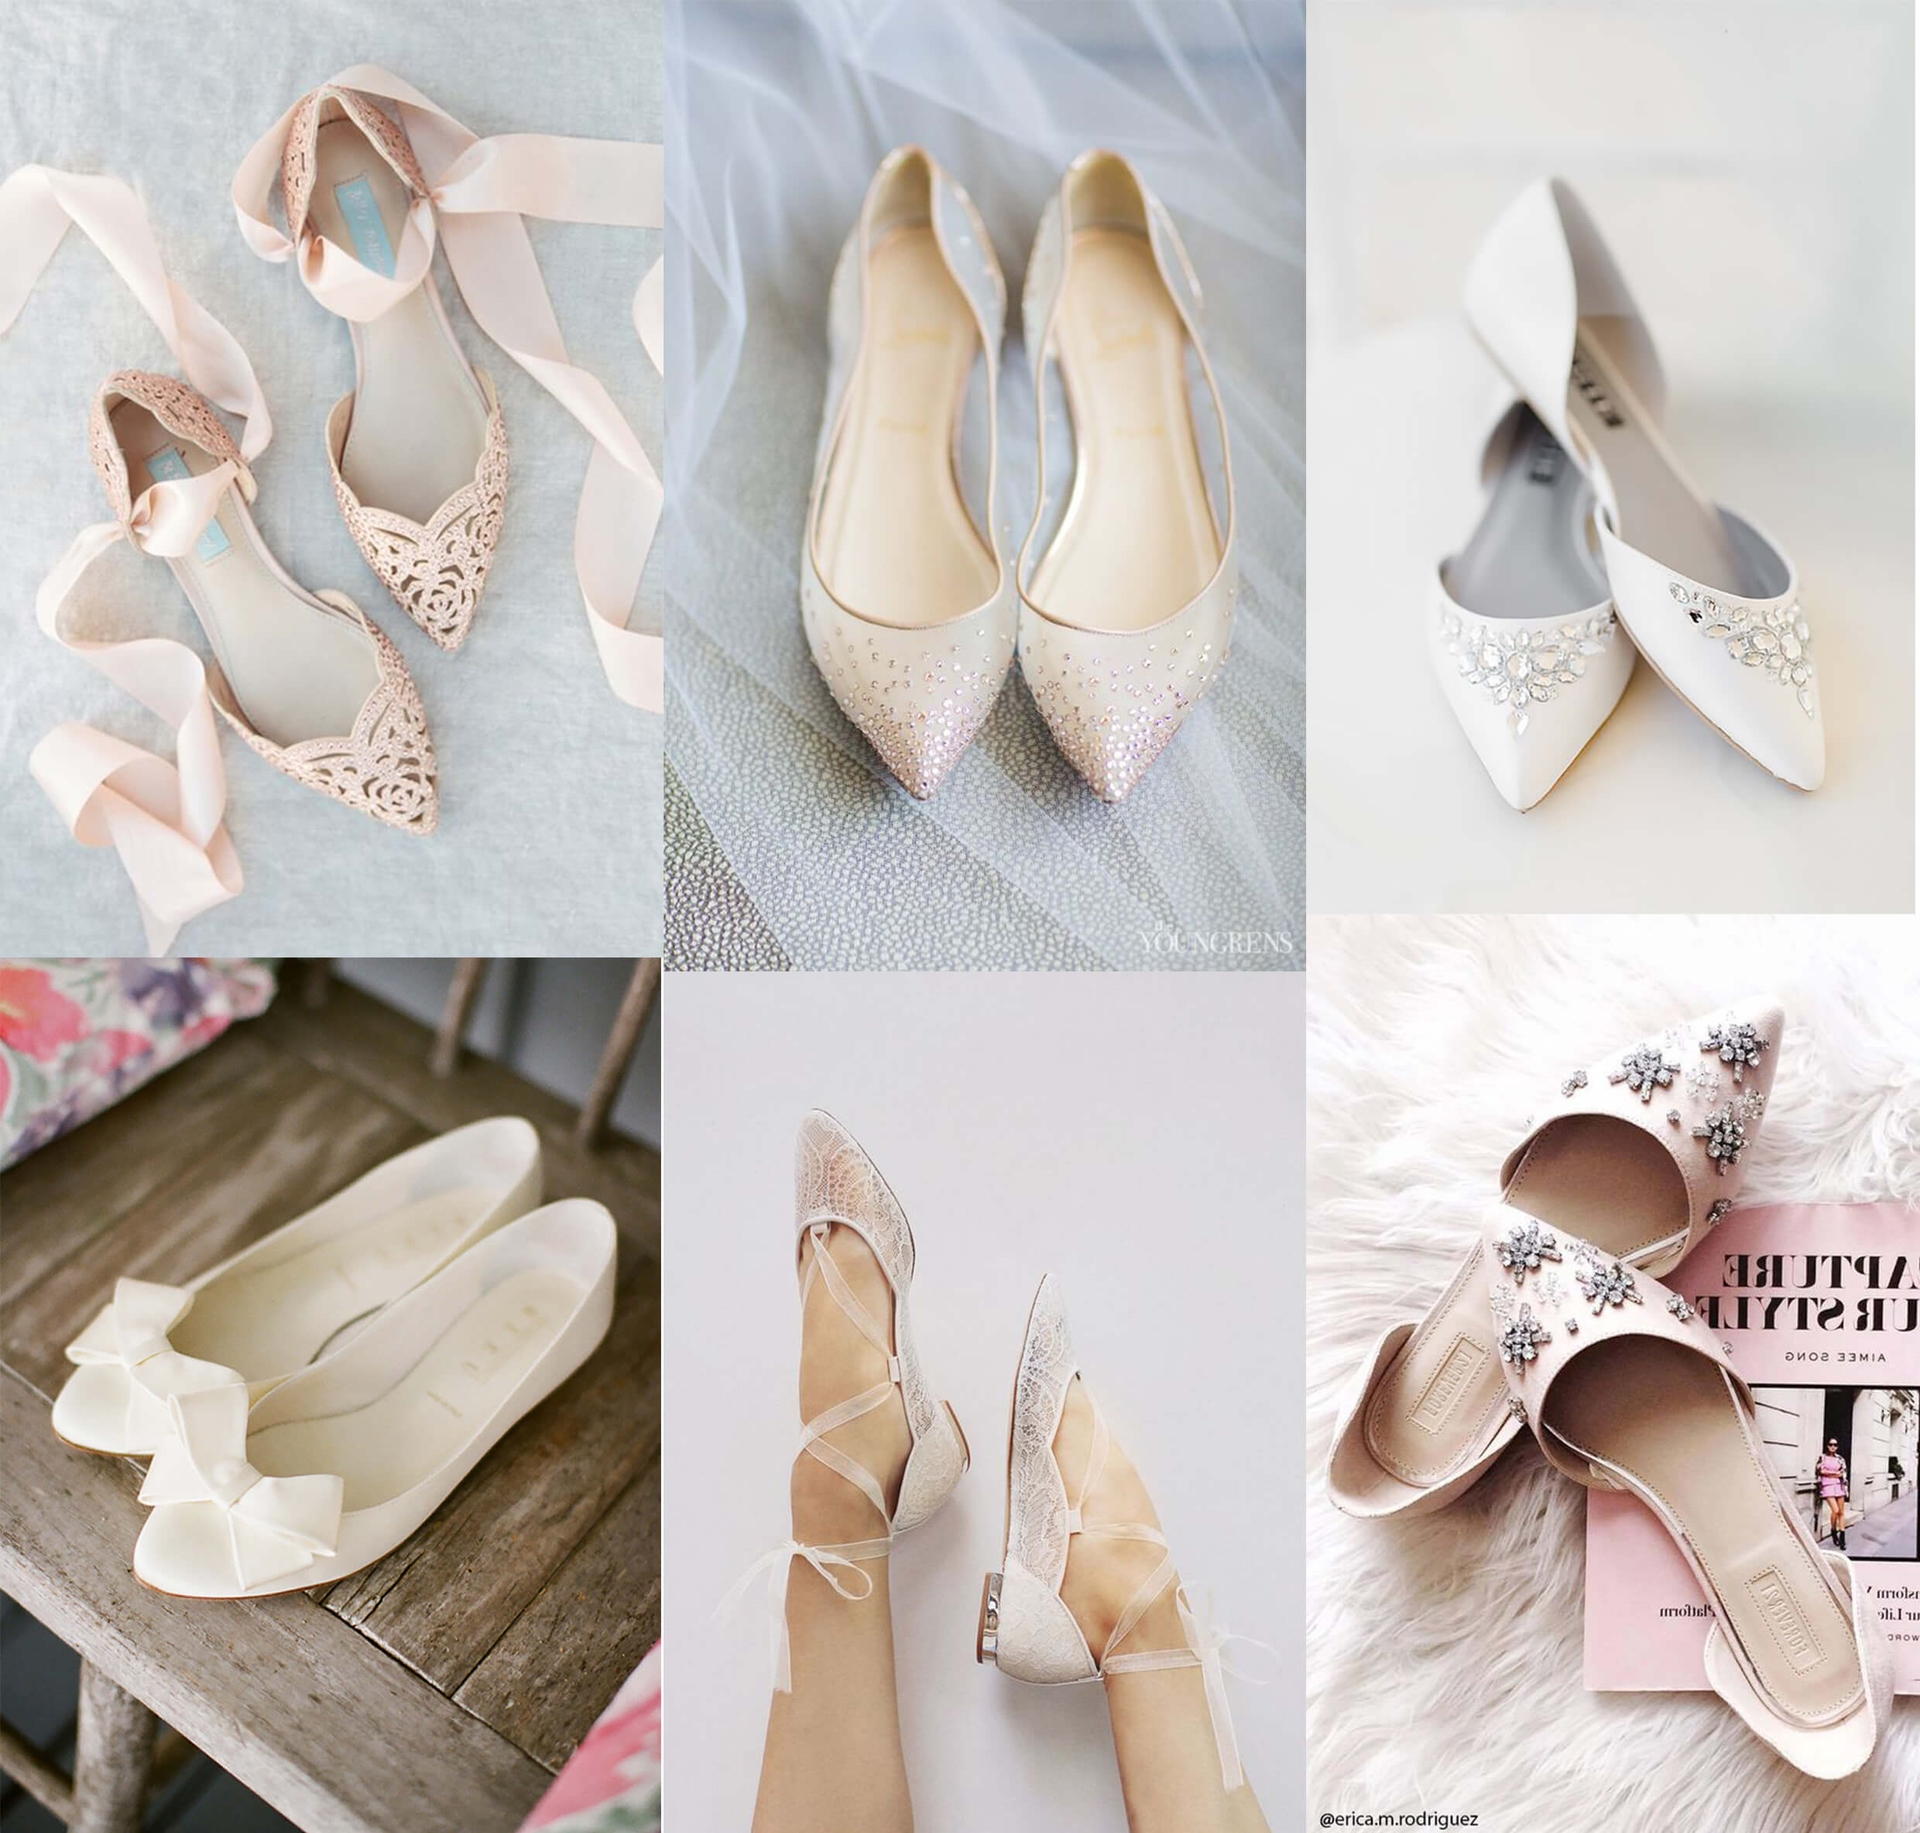 Sepatu Flats untuk Pernikahan? Kenapa Tidak?